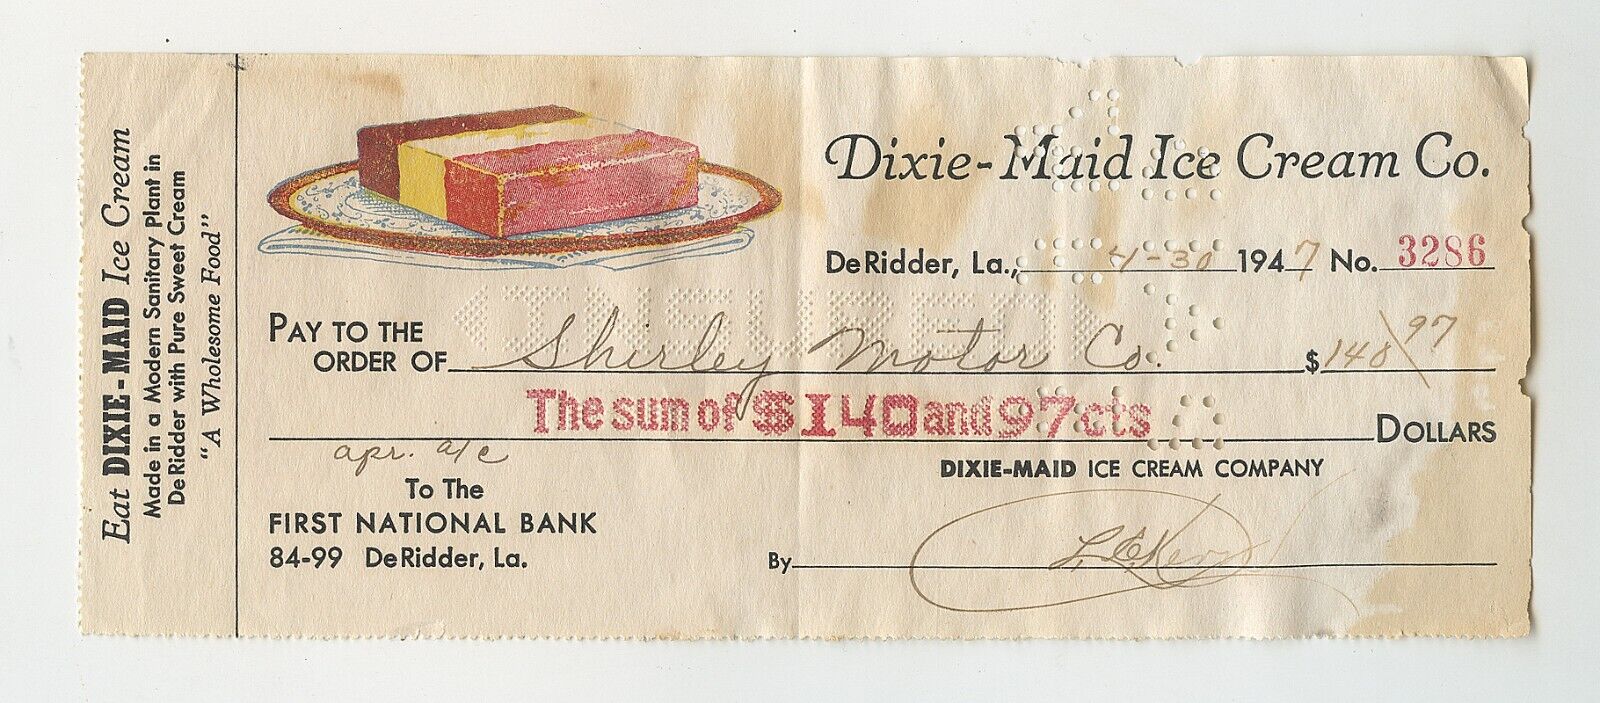 Rare 1947 Dixie-Maid Ice Cream Co. Check - DeRidder, La. - Cancelled check